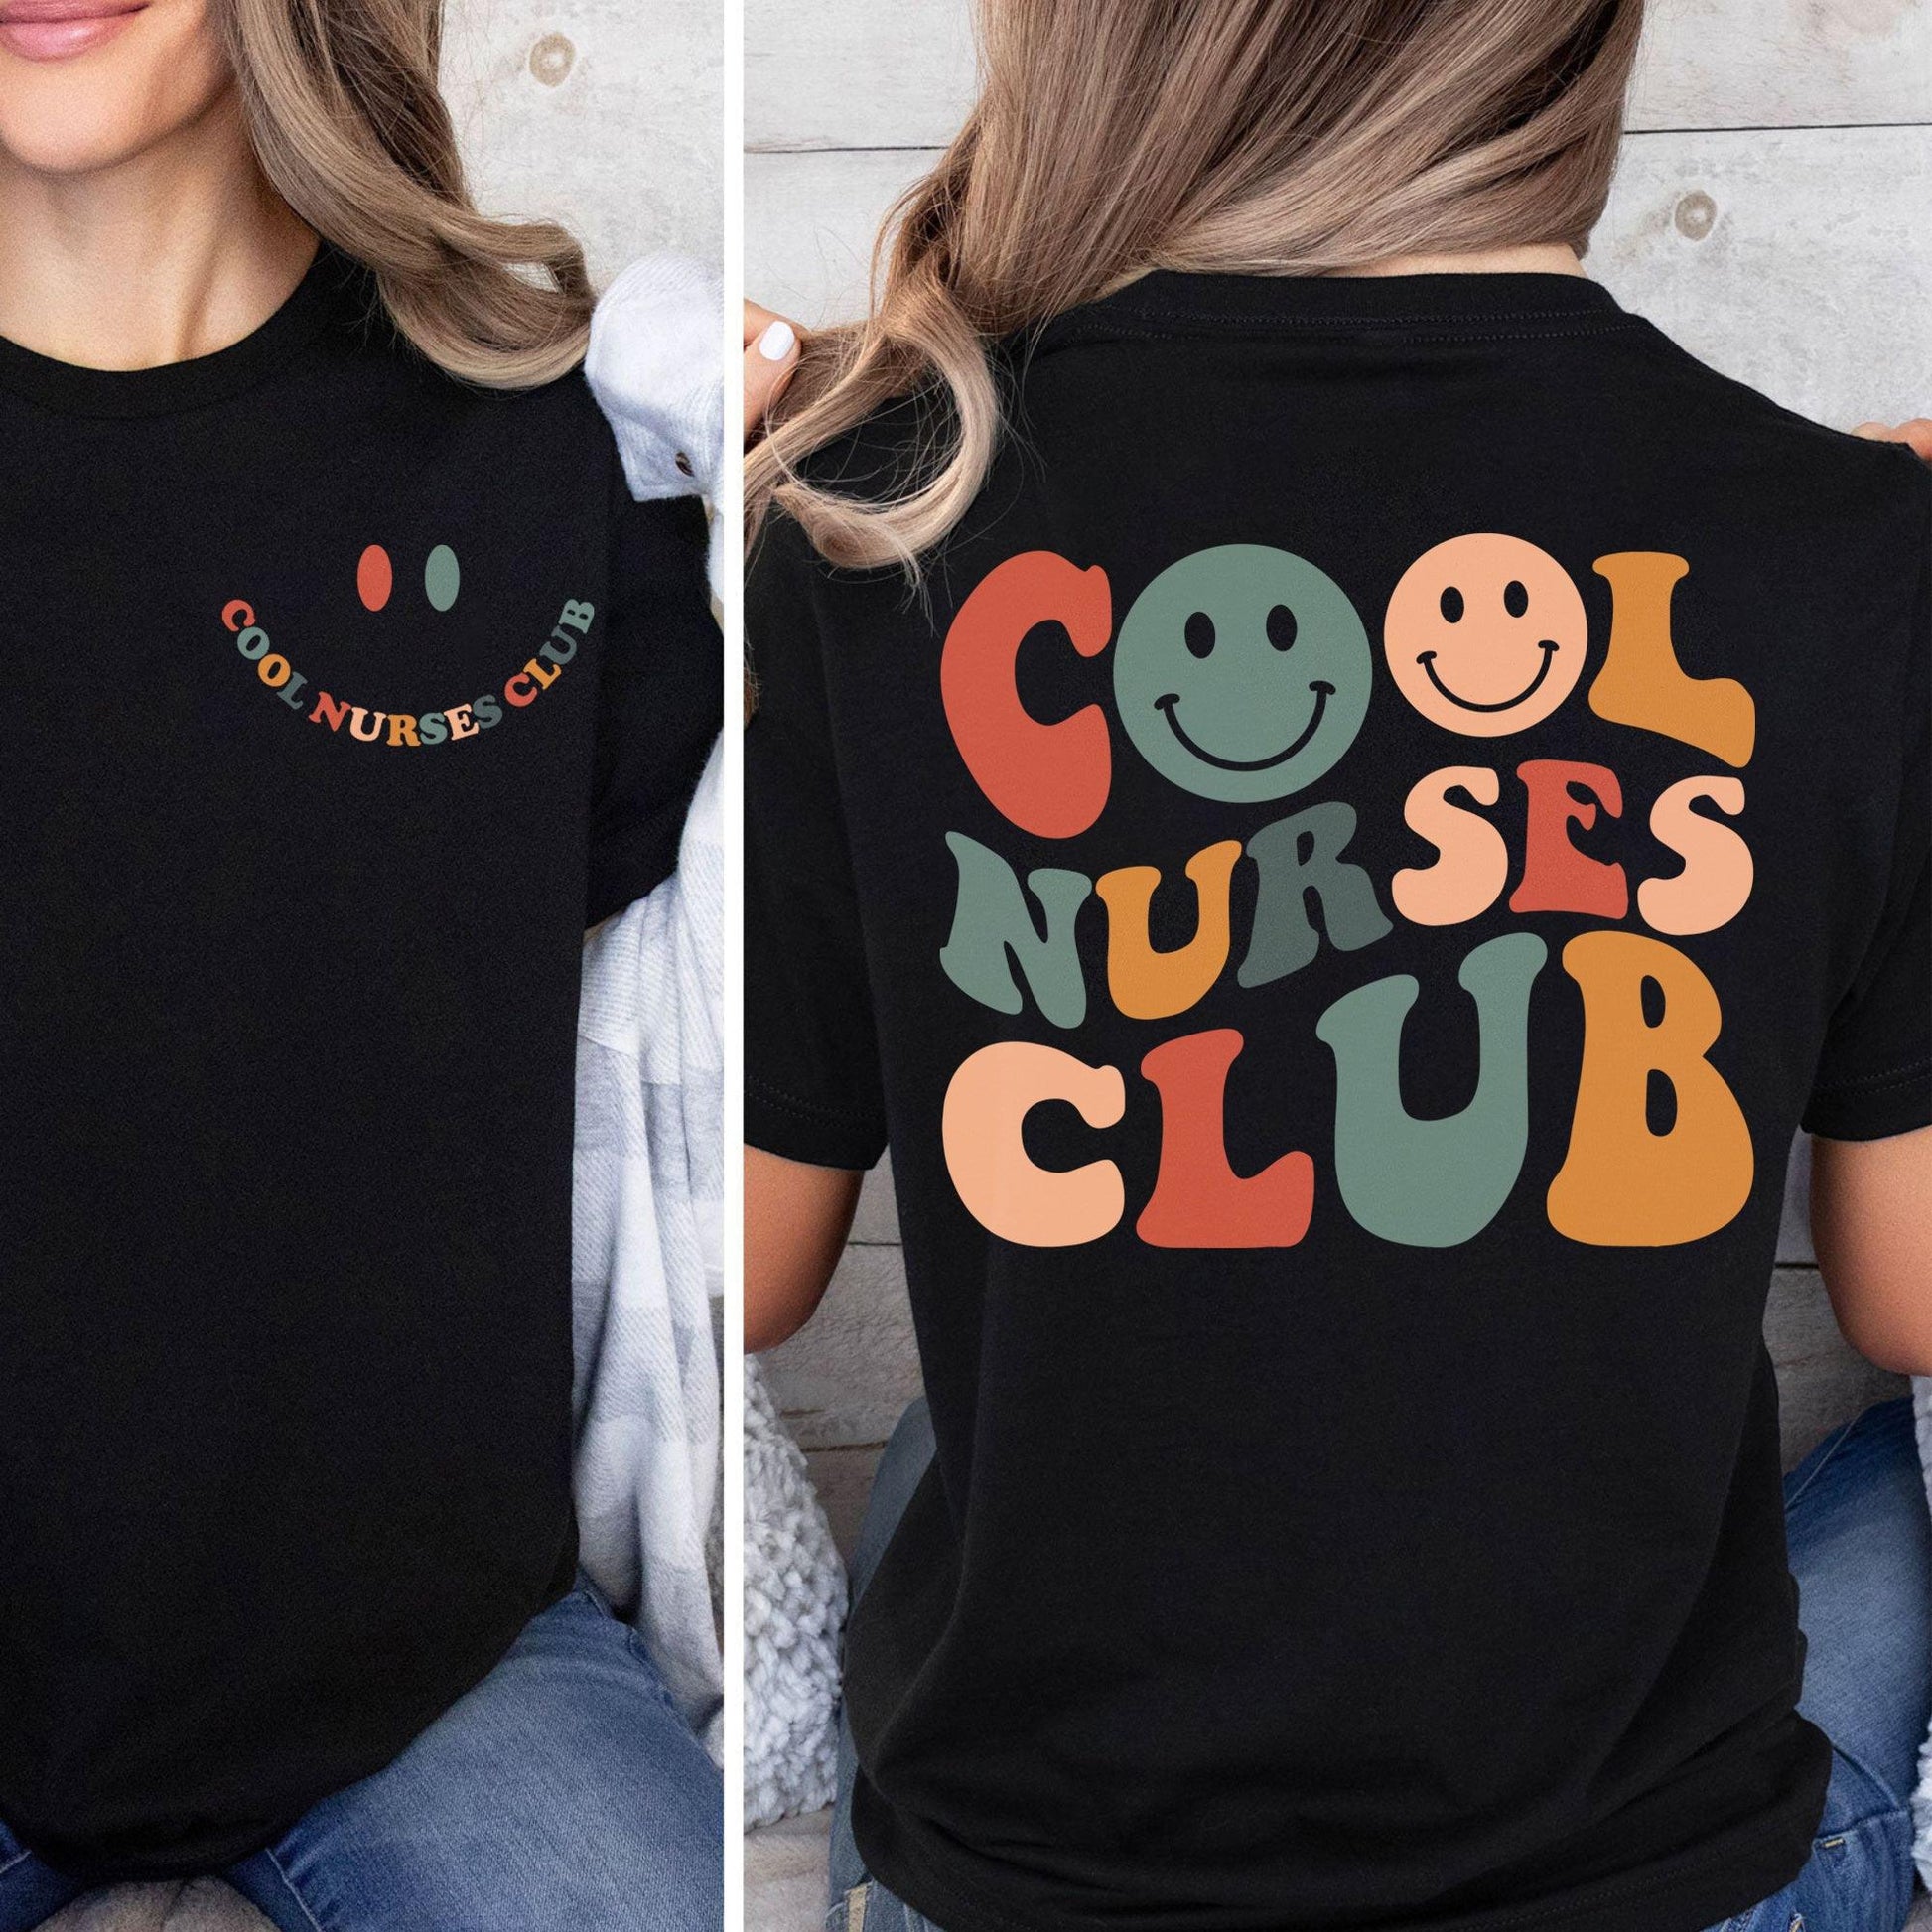 Cooles Nurses Club Sweatshirt und Hoodie- Geschenke für Krankenschwestern - GiftHaus